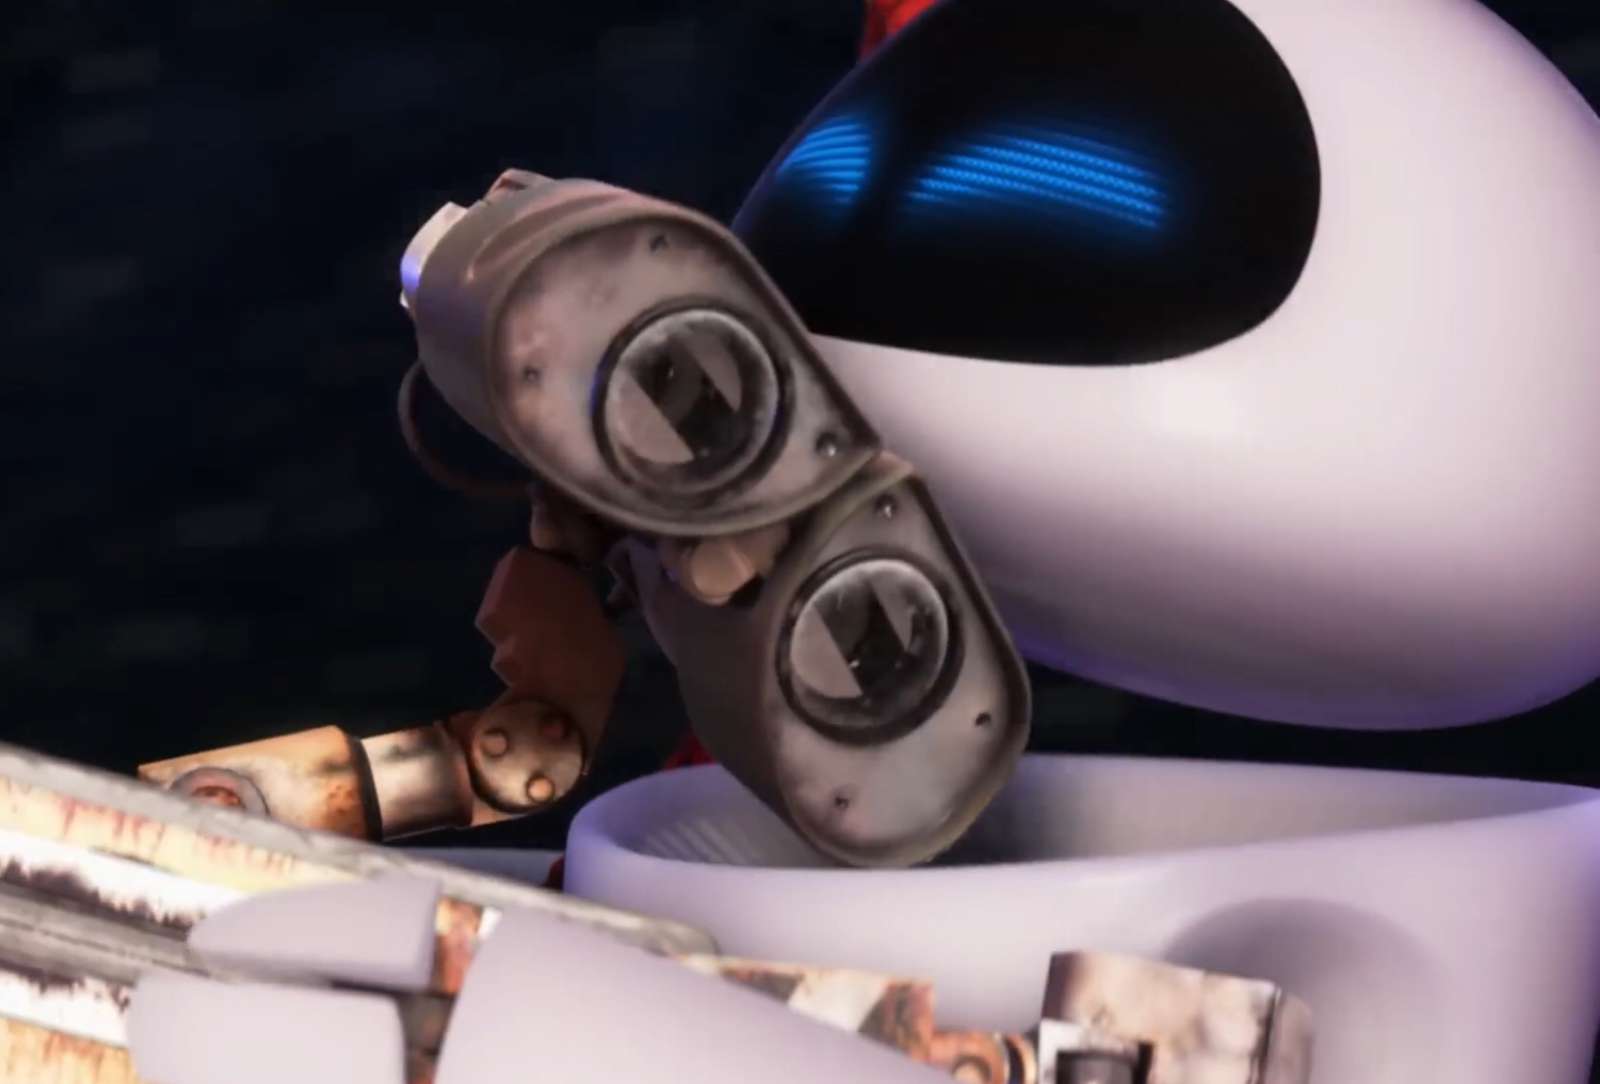 WALL-E X Eve❤️❤️❤️❤️❤️❤️❤️ online puzzle